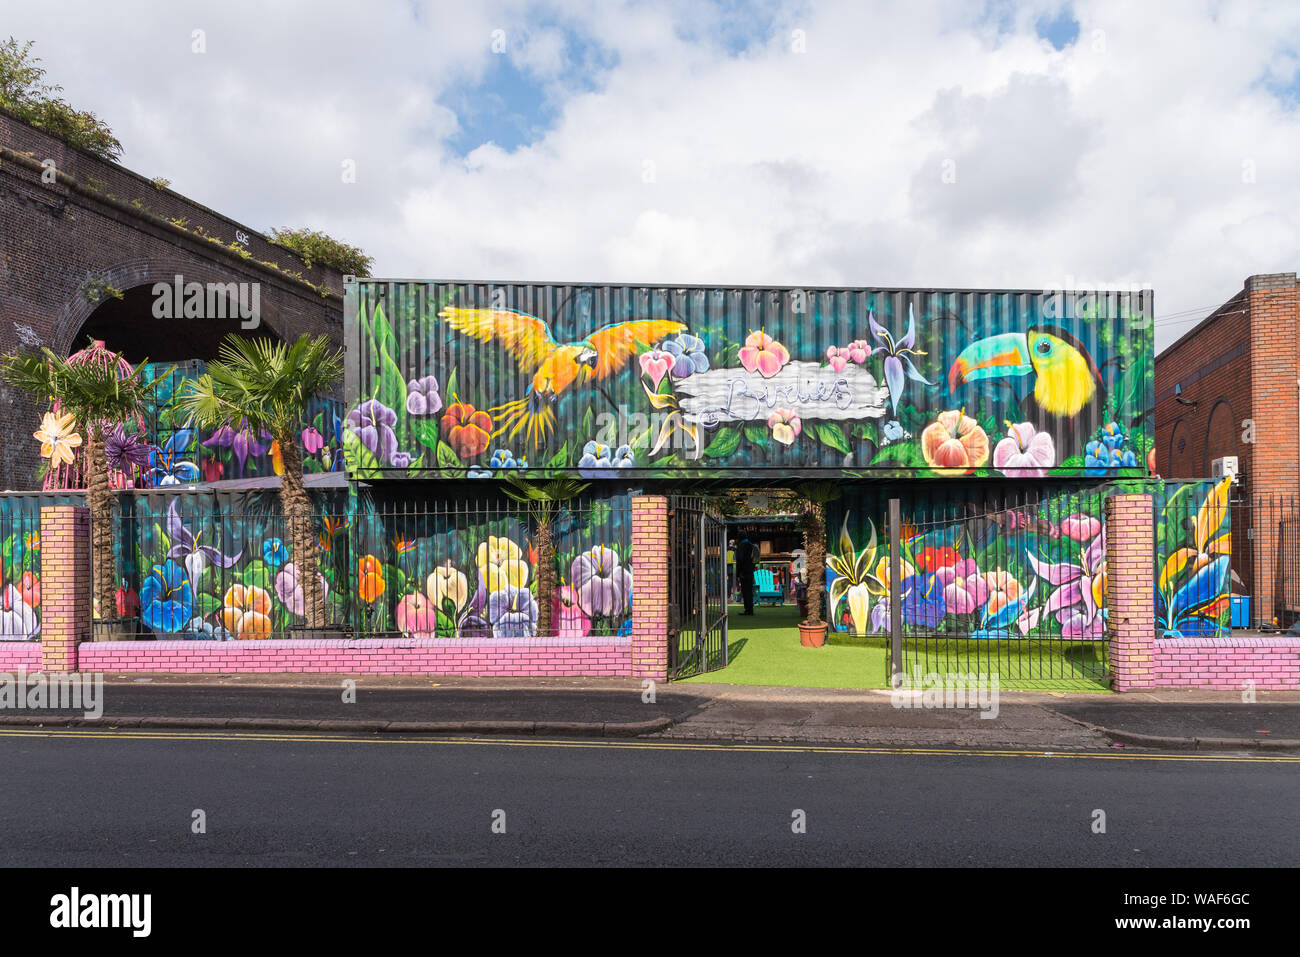 Birdies ist ein tropischer Strand-bar-themed Veranstaltungsort in der Custard Factory, Digbeth, Birmingham, Großbritannien Stockfoto